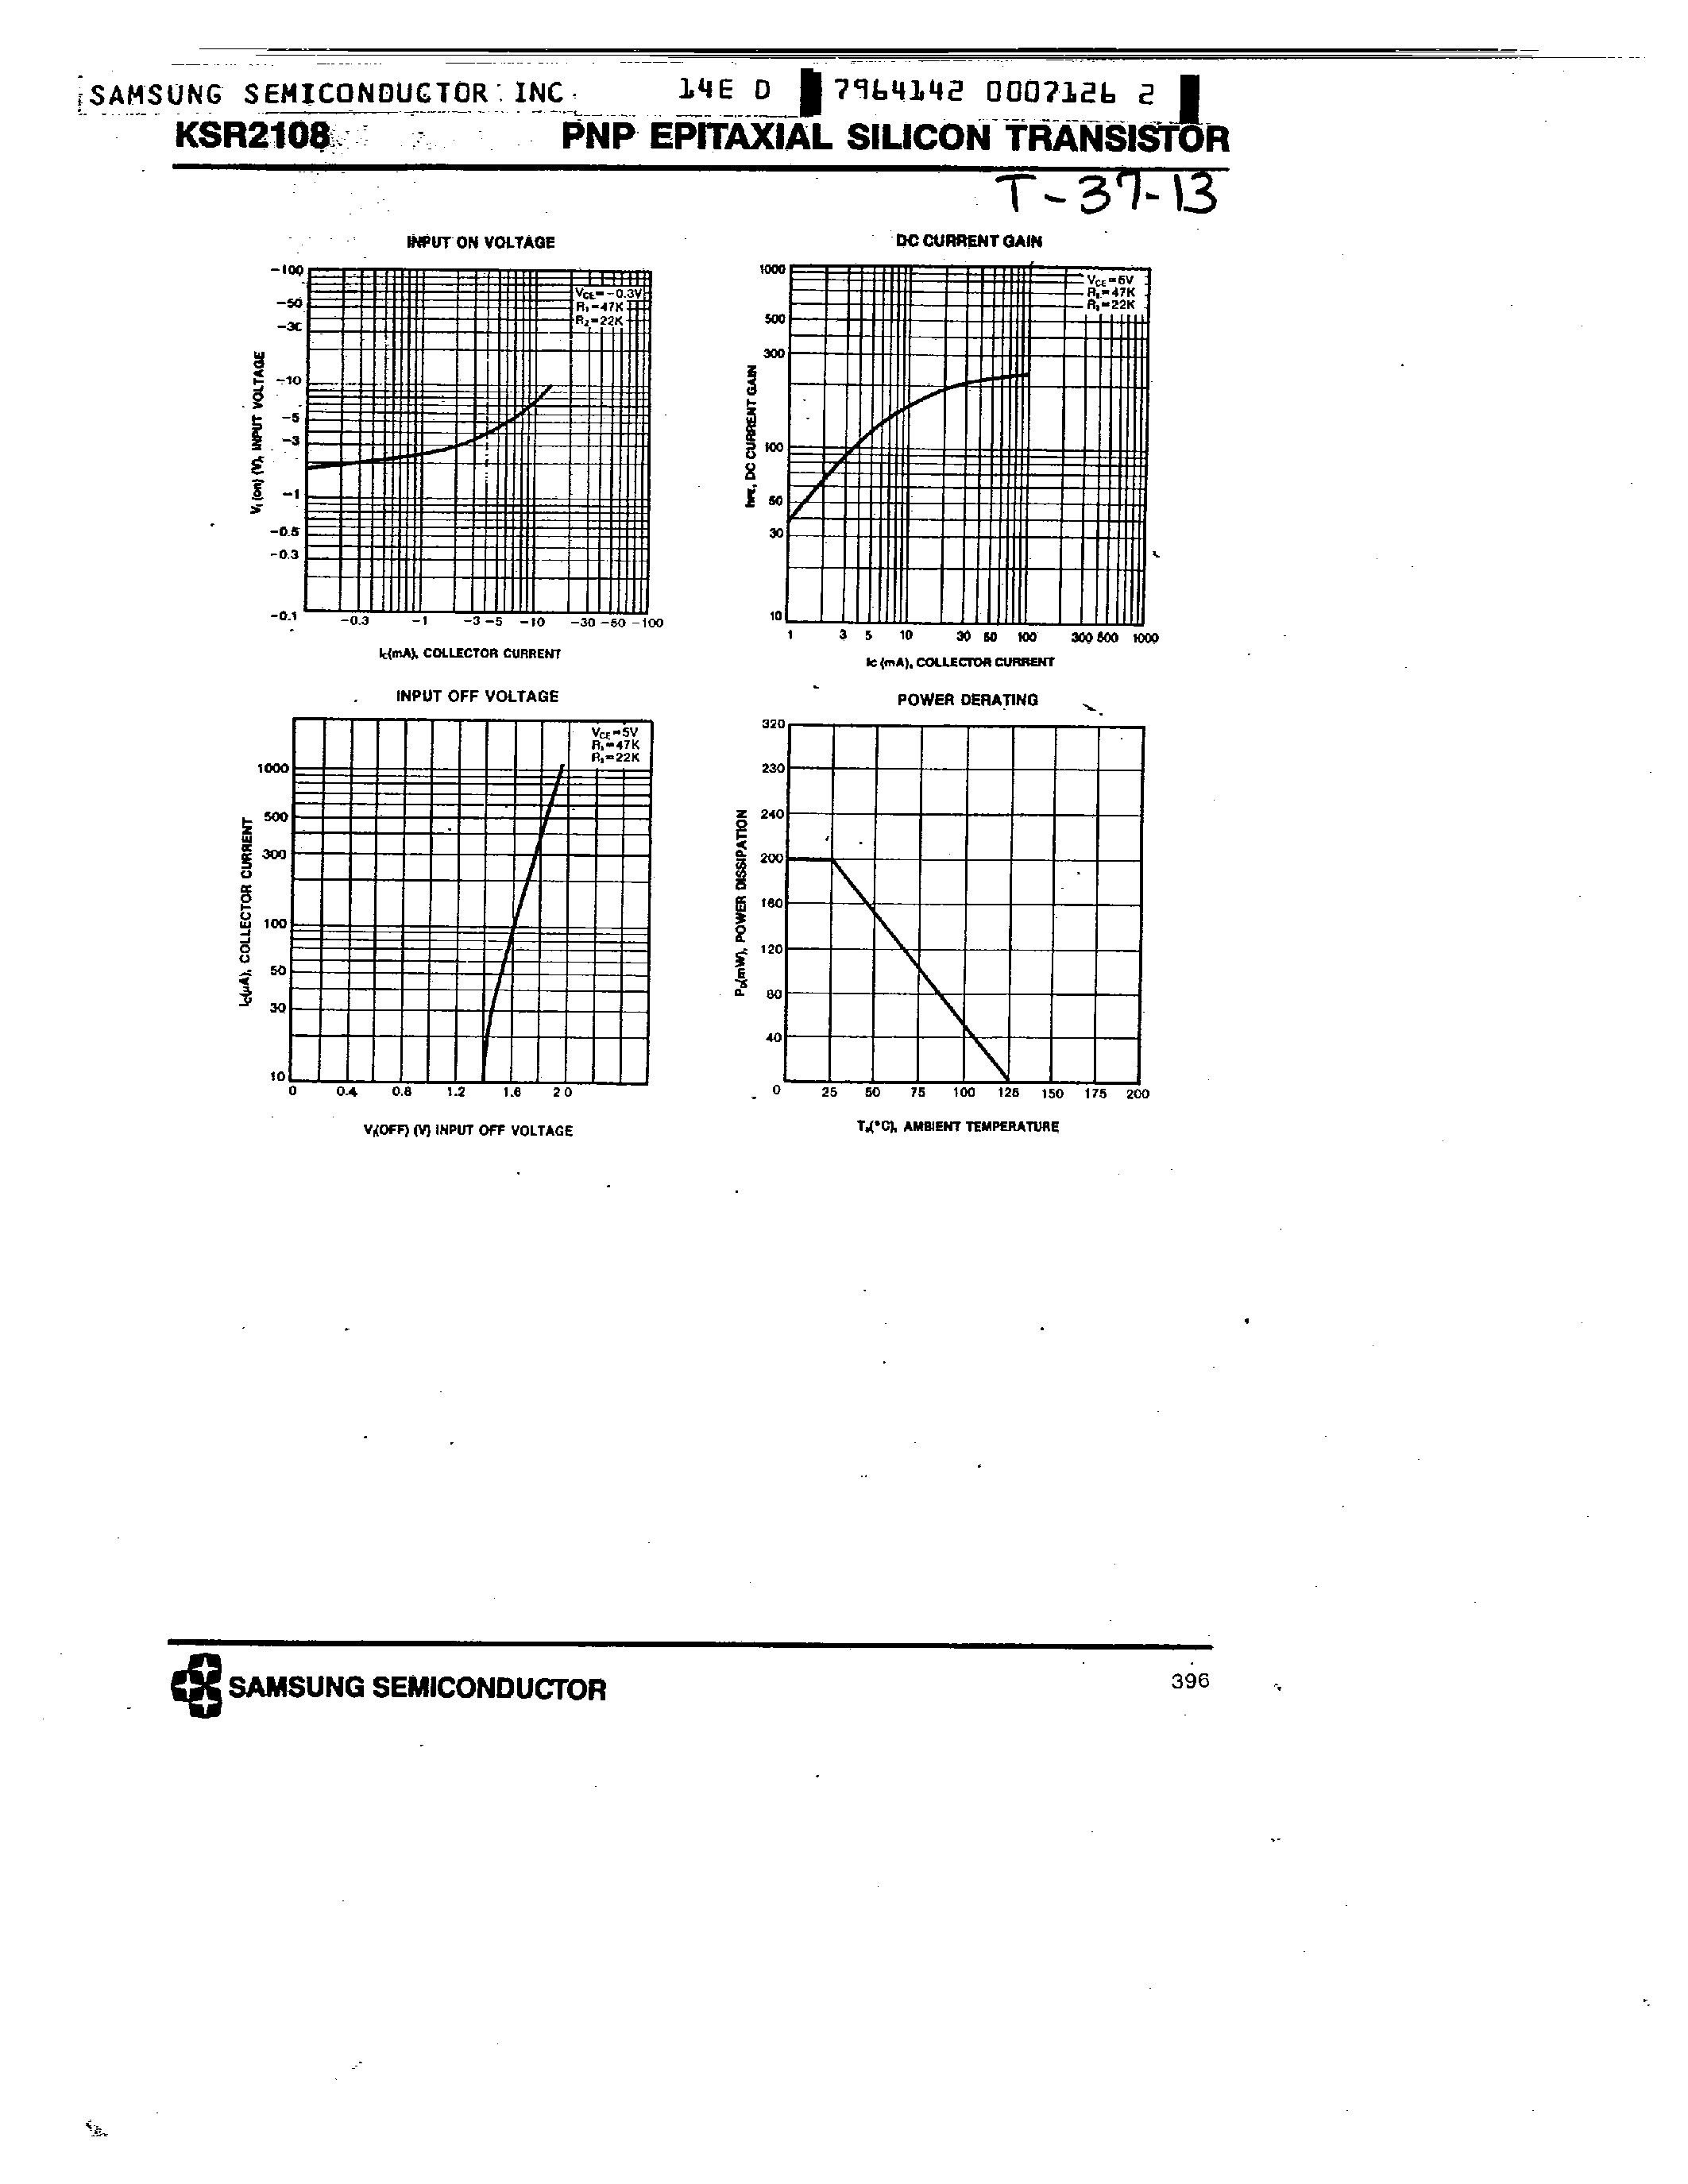 Datasheet KSR2108 - PNP (SWITCHING APPLICATION) page 2